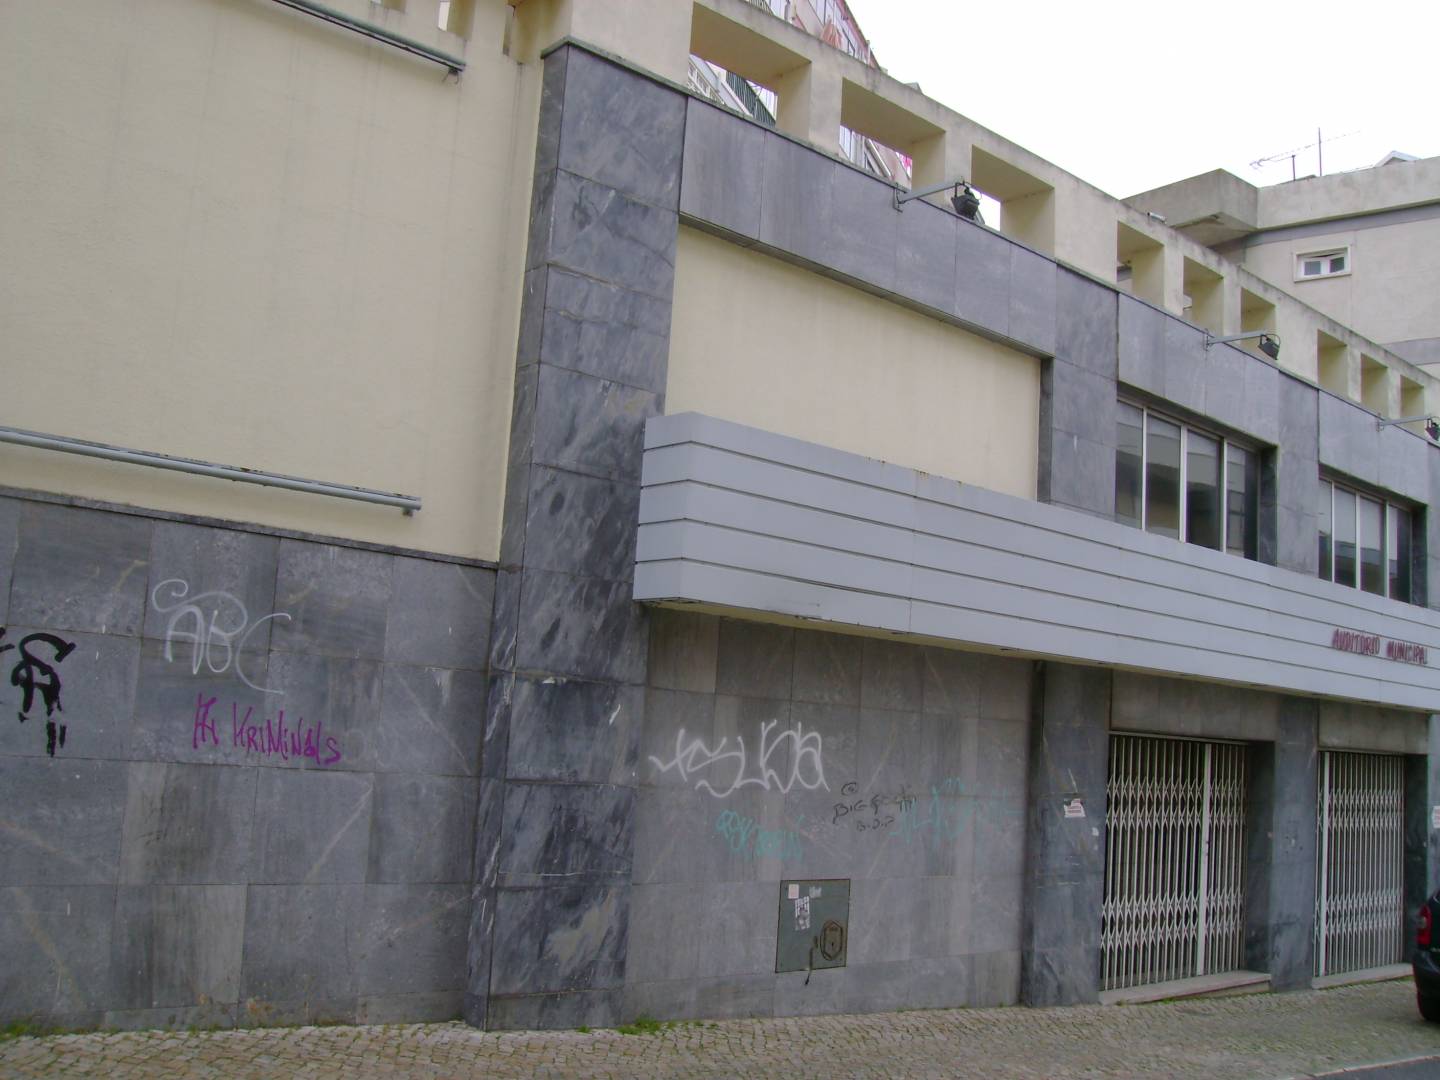 Auditório Municipal da Póvoa de Santo Adrião